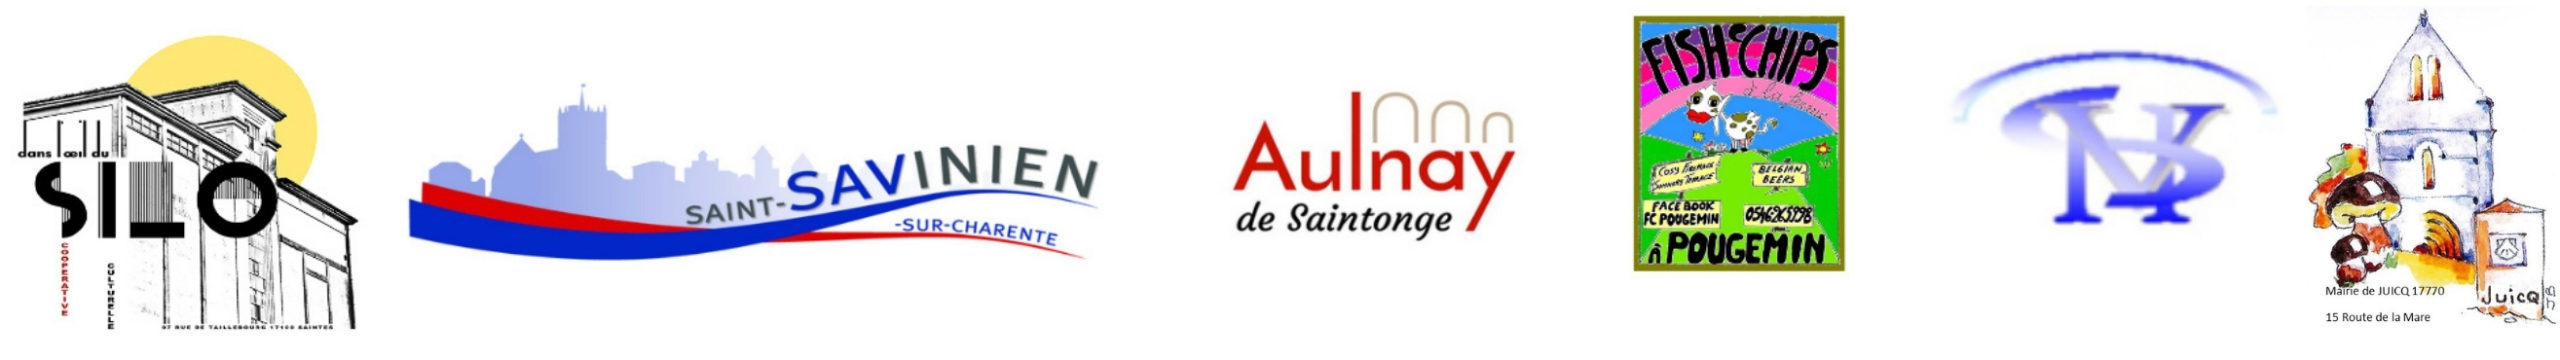 Le Silo, Saint-Savinien, Aulnay de Saintonge, Fish'n'Chips de Pougemin& Mairie de Juicq